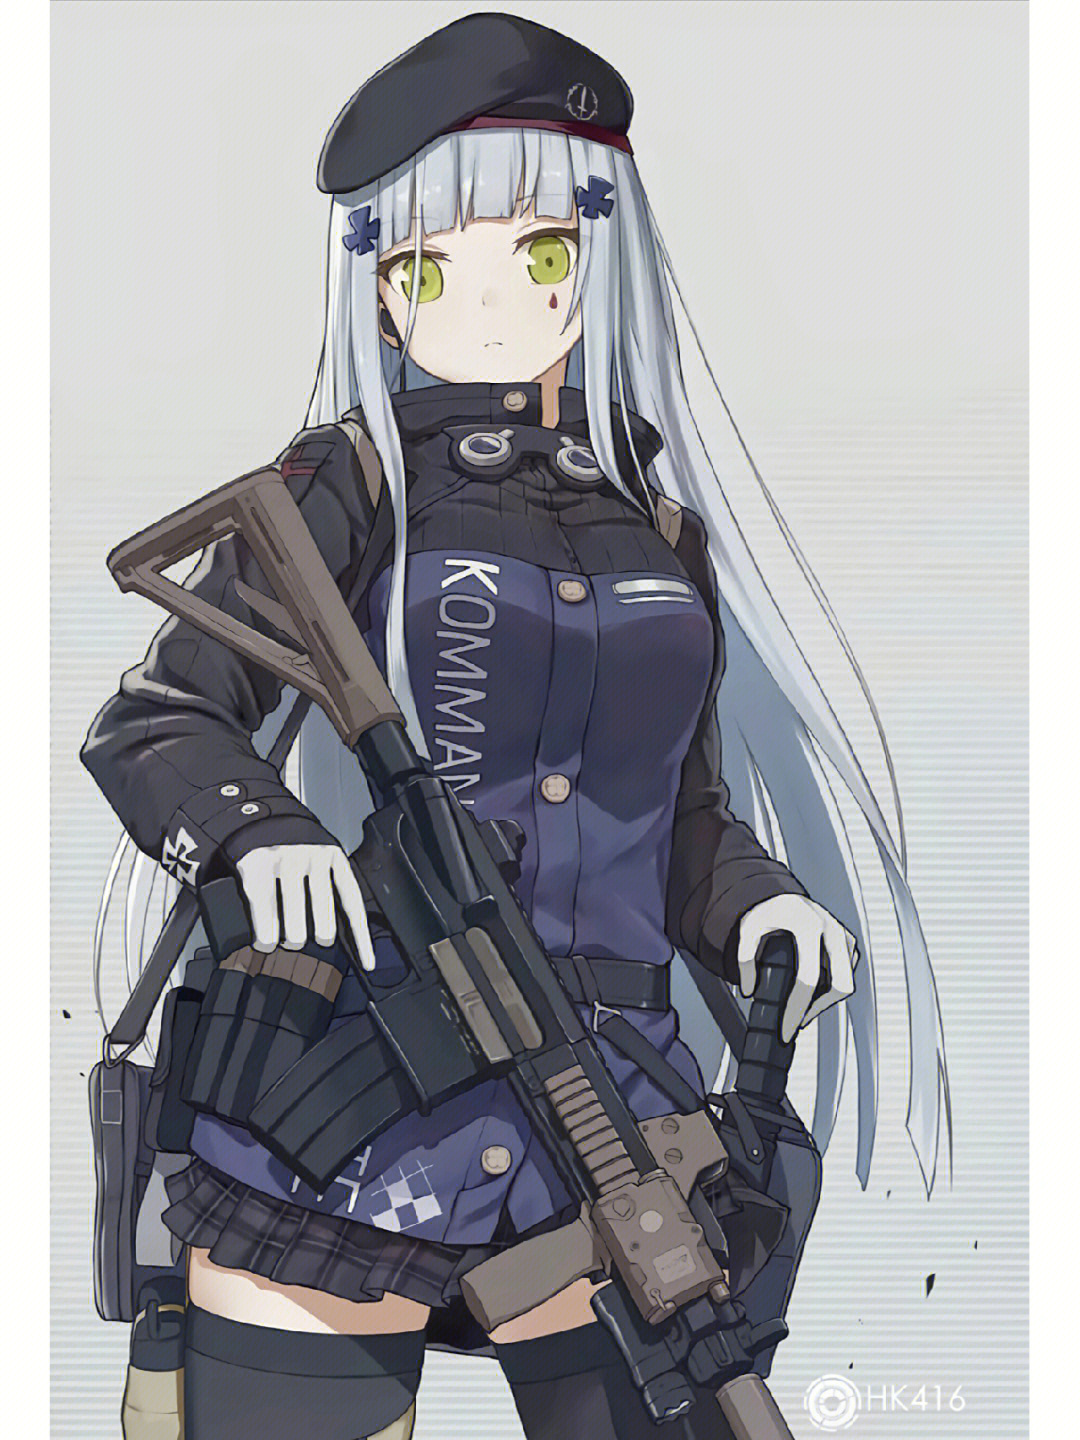 少女前线HK416美图图片